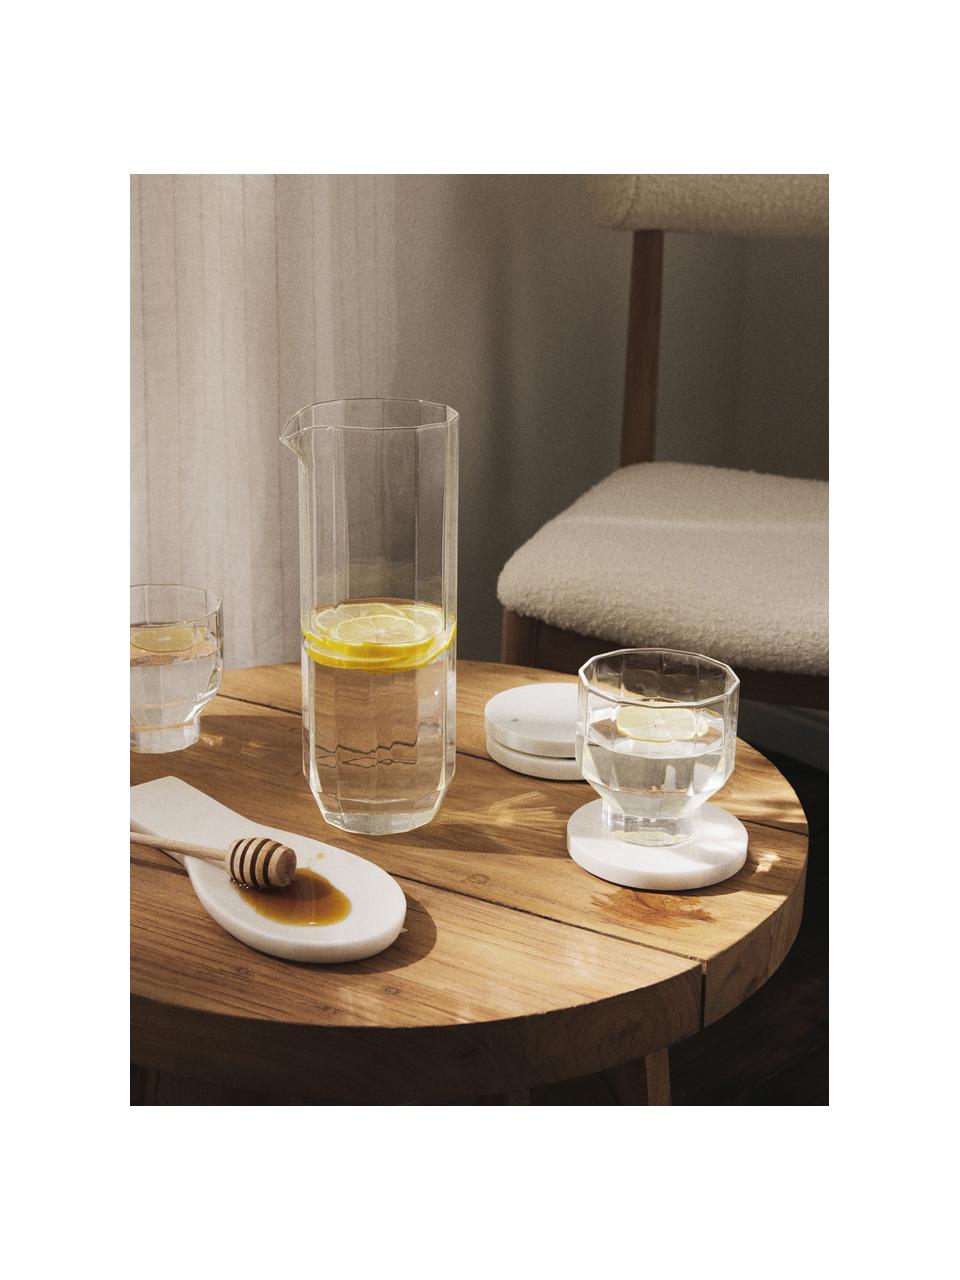 Mundgeblasene Wassergläser Angoli, 4 Stück, Borosilikatglas, mundgeblasen

Entdecke die Vielseitigkeit von Borosilikatglas für Dein Zuhause! Borosilikatglas ist ein hochwertiges, zuverlässiges und robustes Material. Es zeichnet sich durch seine außergewöhnliche Hitzebeständigkeit aus und ist daher ideal für Deinen heißen Tee oder Kaffee. Im Vergleich zu herkömmlichem Glas ist Borosilikatglas widerstandsfähiger gegen Brüche und Risse und somit ein sicherer Begleiter in Deinem Zuhause., Transparent, Ø 9 cm x H 9 cm, 360 ml